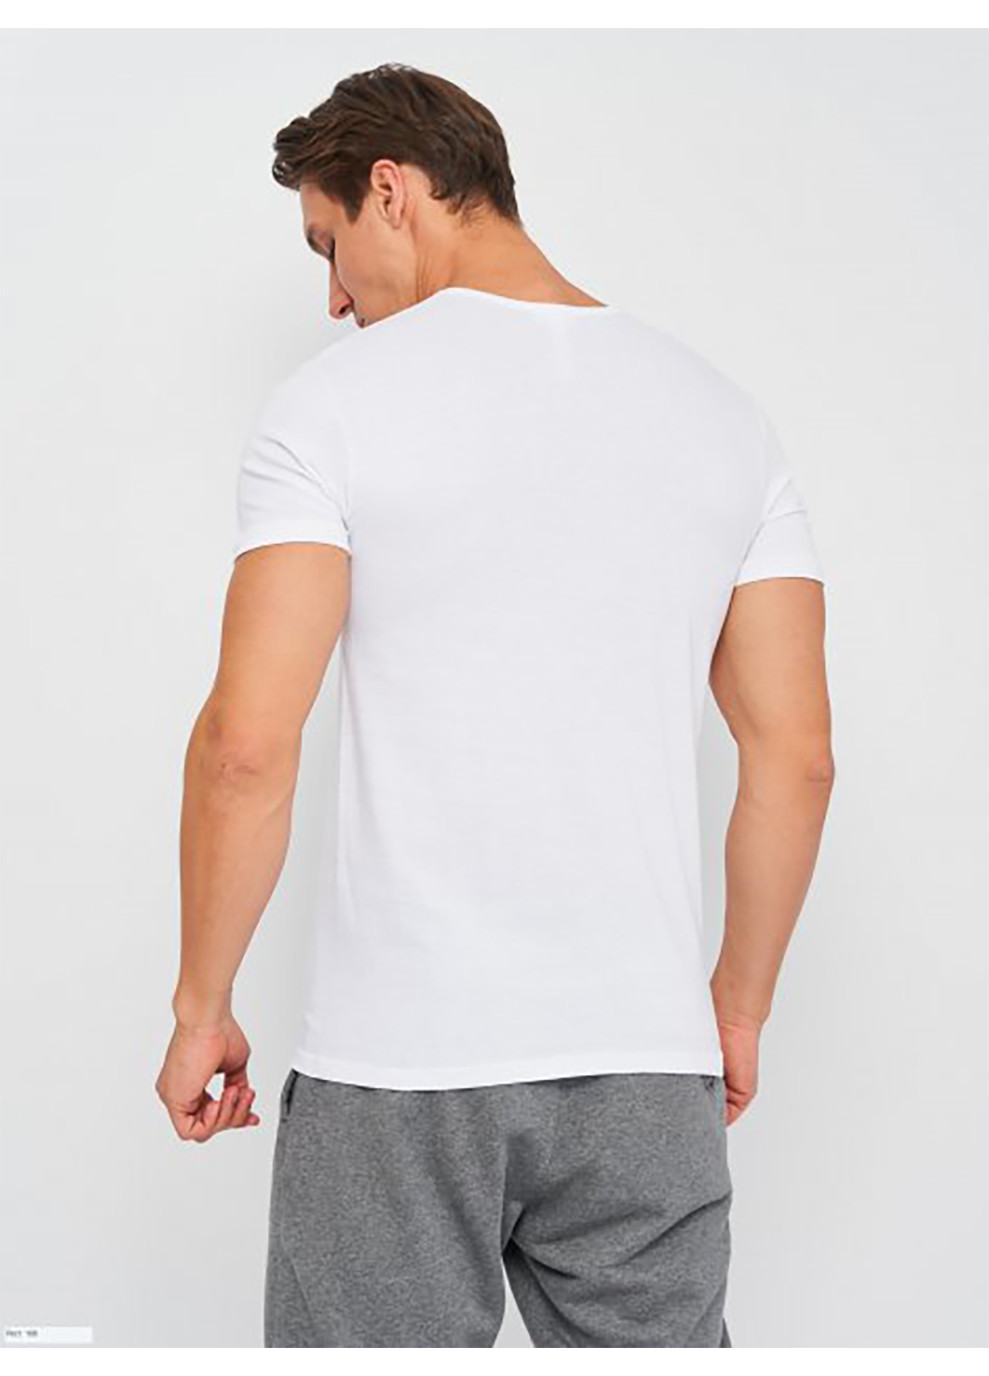 Біла футболка t-shirt mezza manica scollo v білий xl чоловік k1315 bianco-xl Kappa